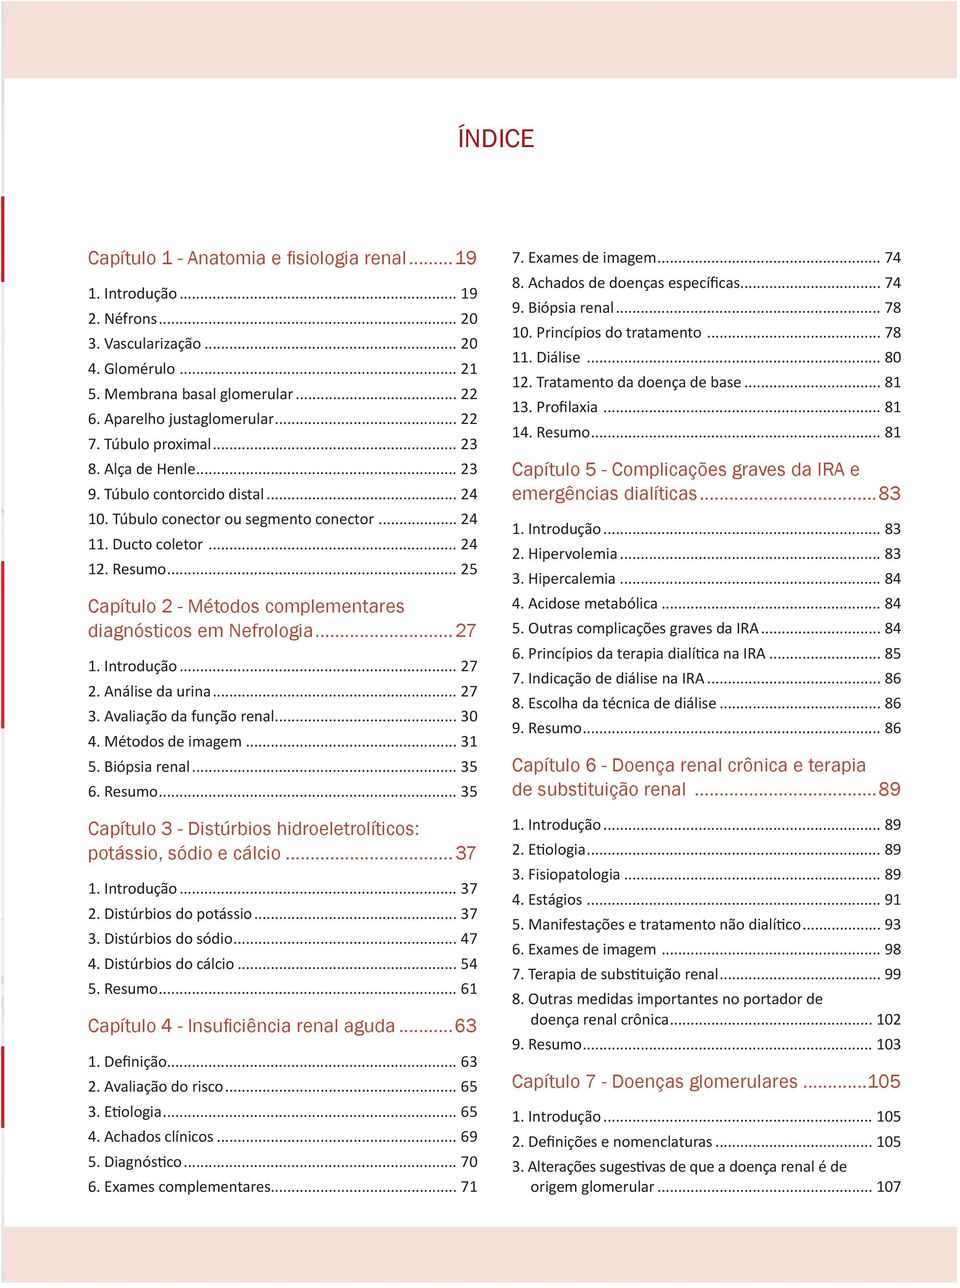 .. 25 Capítulo 2 - Métodos complementares diagnósticos em Nefrologia...27 1. Introdução... 27 2. Análise da urina... 27 3. Avaliação da função renal... 30 4. Métodos de imagem... 31 5. Biópsia renal.